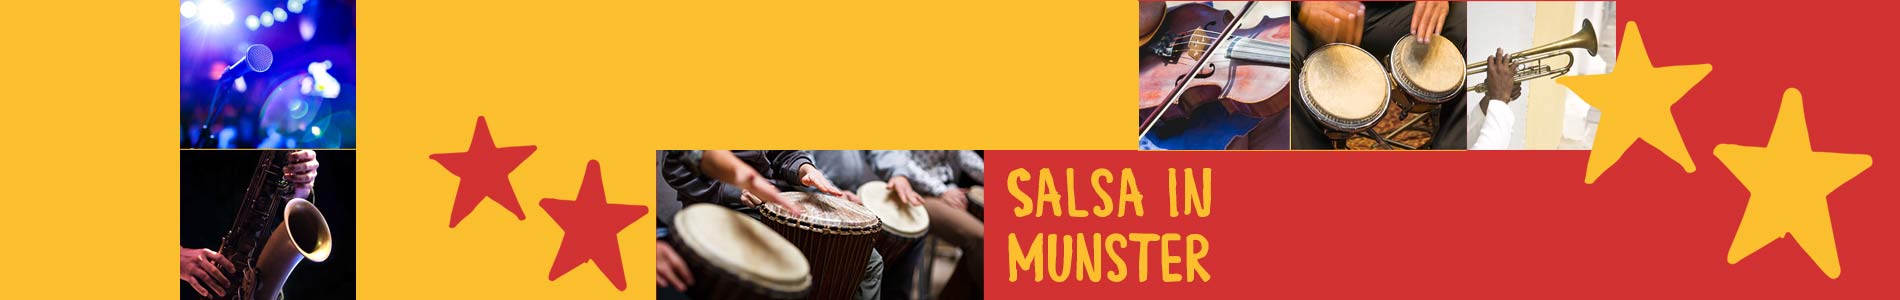 Salsa in Munster – Salsa lernen und tanzen, Tanzkurse, Partys, Veranstaltungen